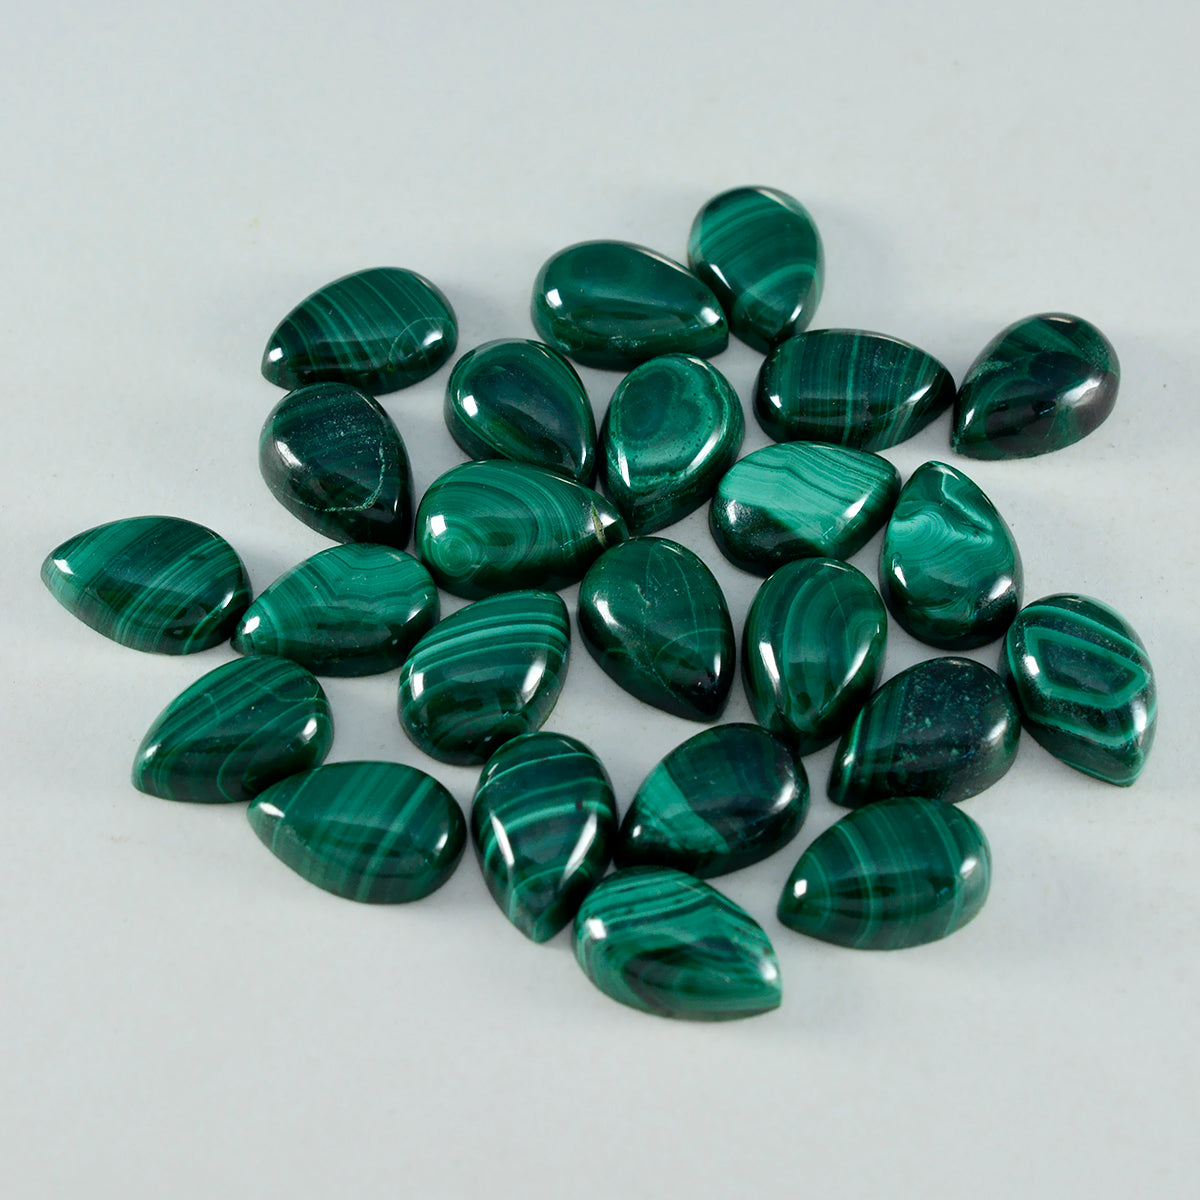 Riyogems 1PC Green Malachite Cabochon 5x7 mm Pear Shape A1 Quality Gemstone